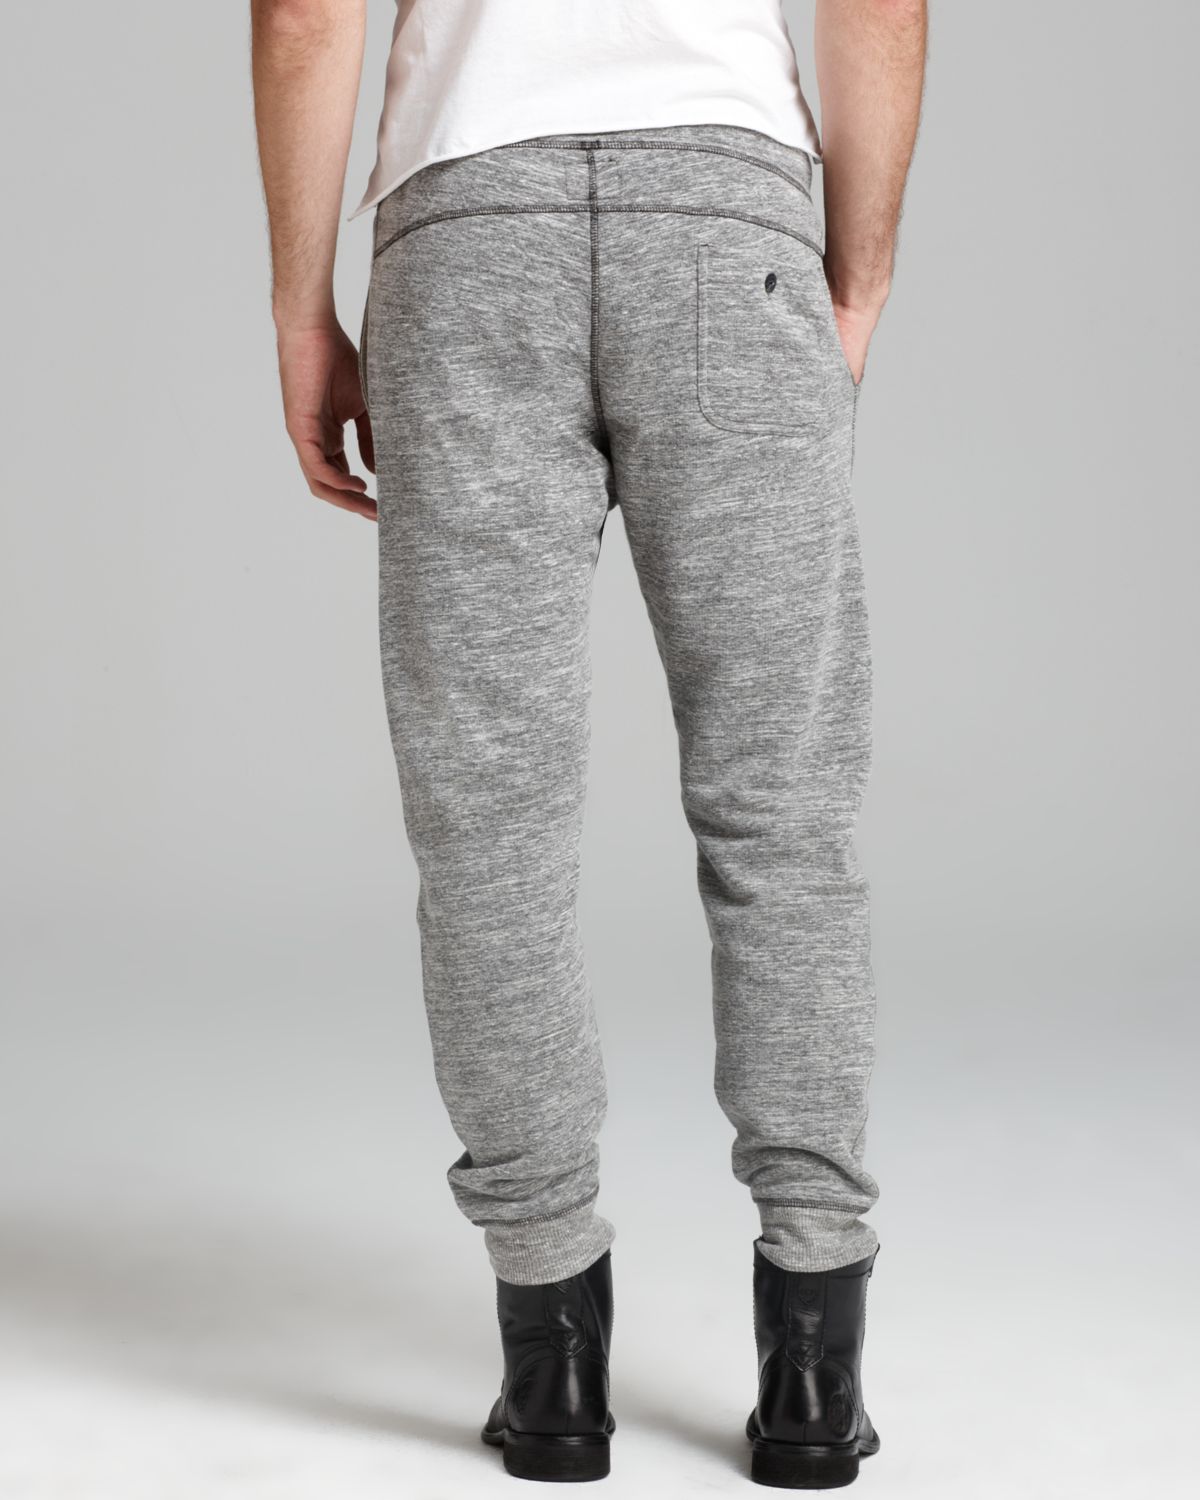 Lyst - Diesel Pisau Sweatpants in Gray for Men